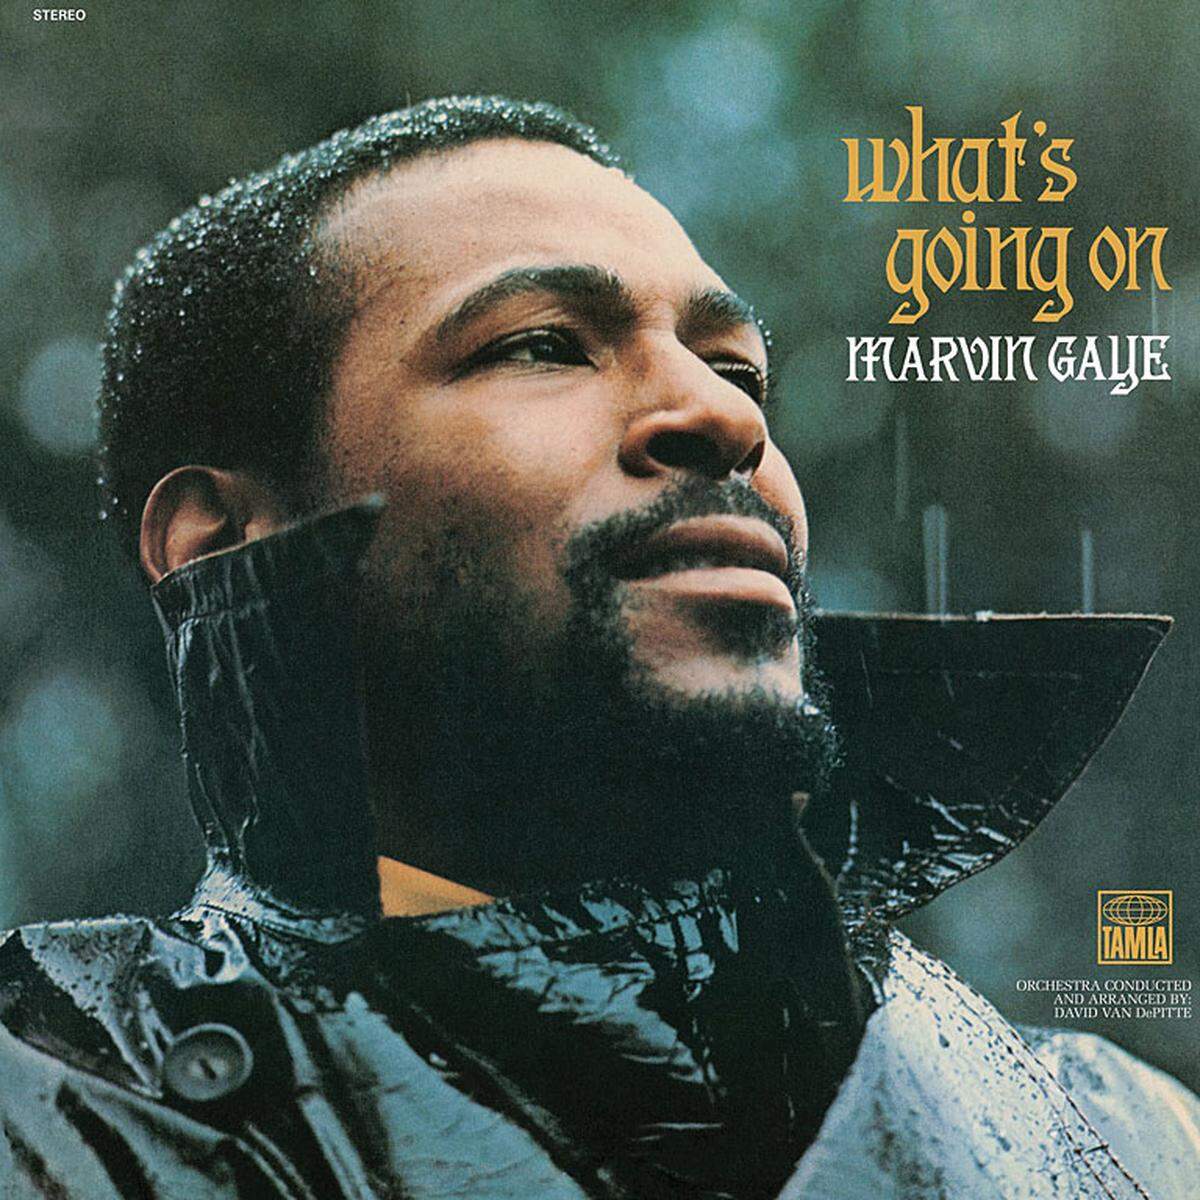 Auch Marvin Gayes "What's Going On" (1971) darf in keiner Sammlung fehlen. Punkt.